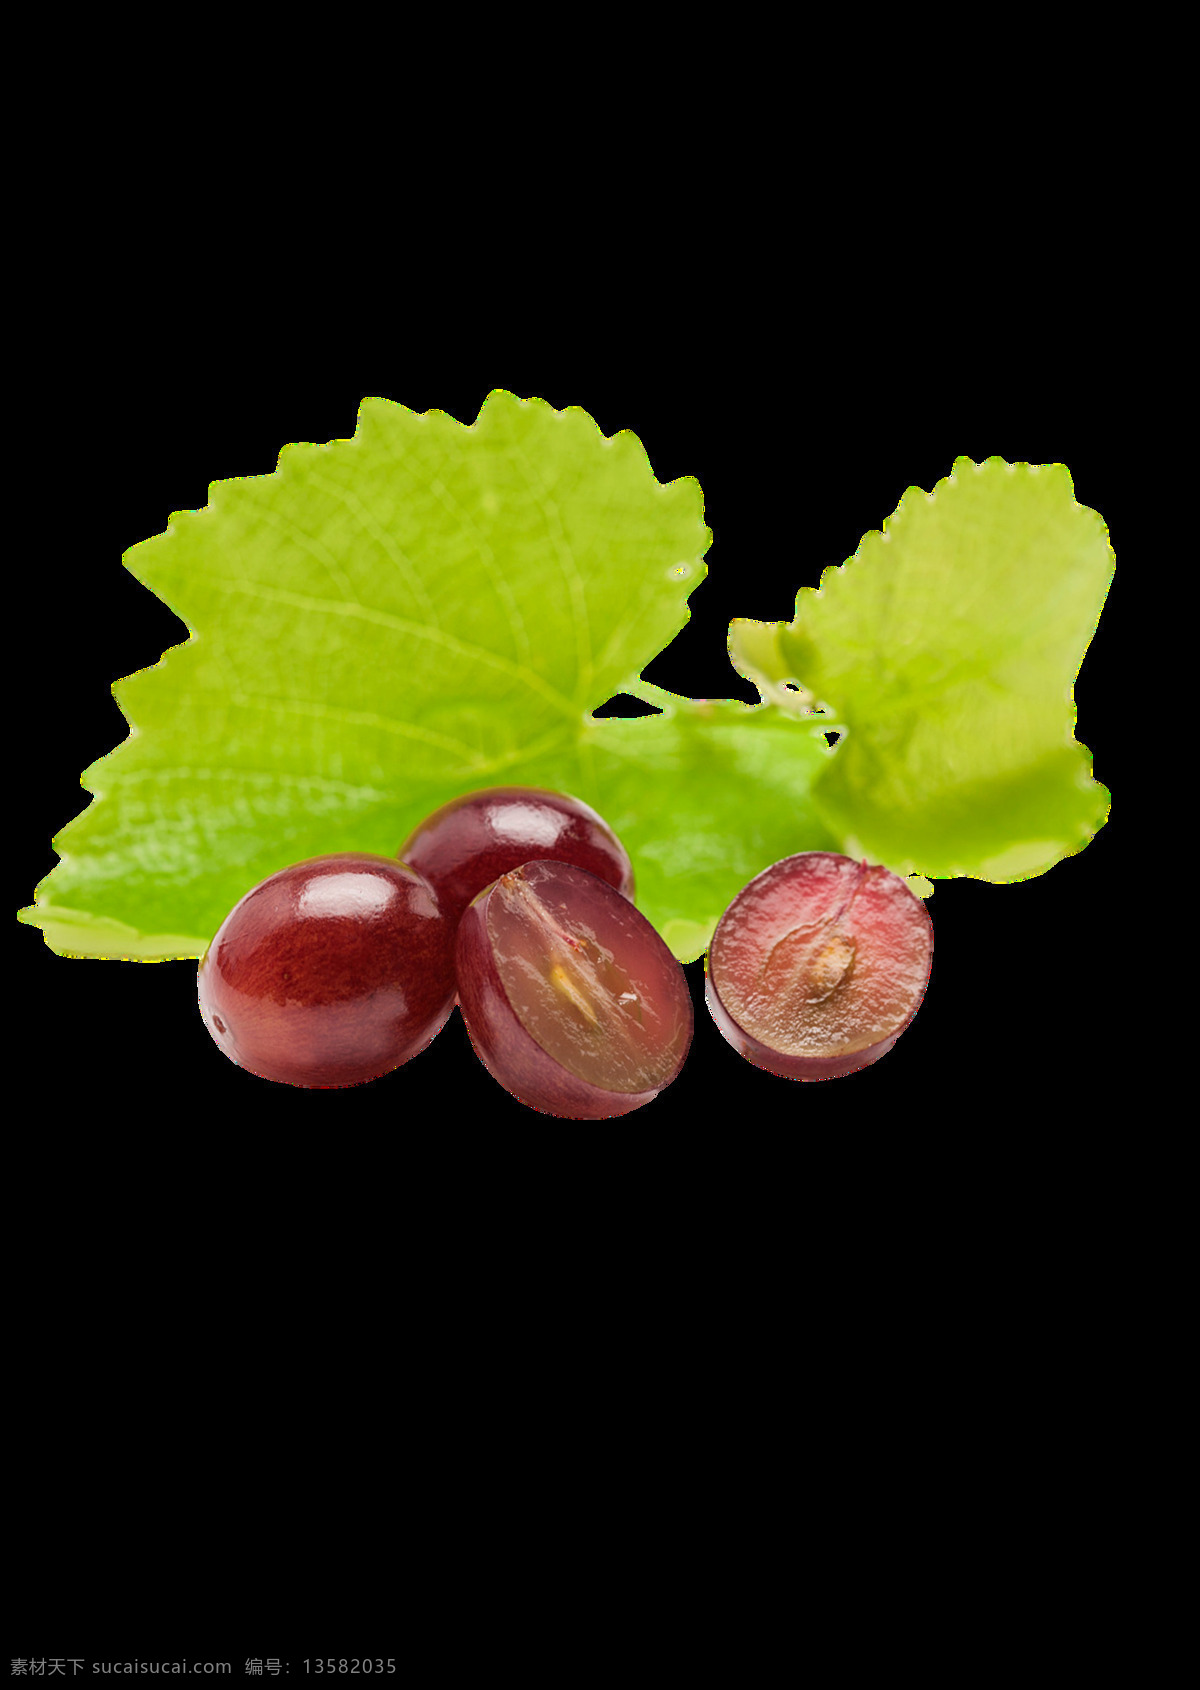 黄葡萄 紫葡萄 绿葡萄 红葡萄 提子 红提 黑葡萄 水果 新鲜水果 维生素 营养 食品 食物 进口葡萄 生态葡萄 有机葡萄 餐饮美食